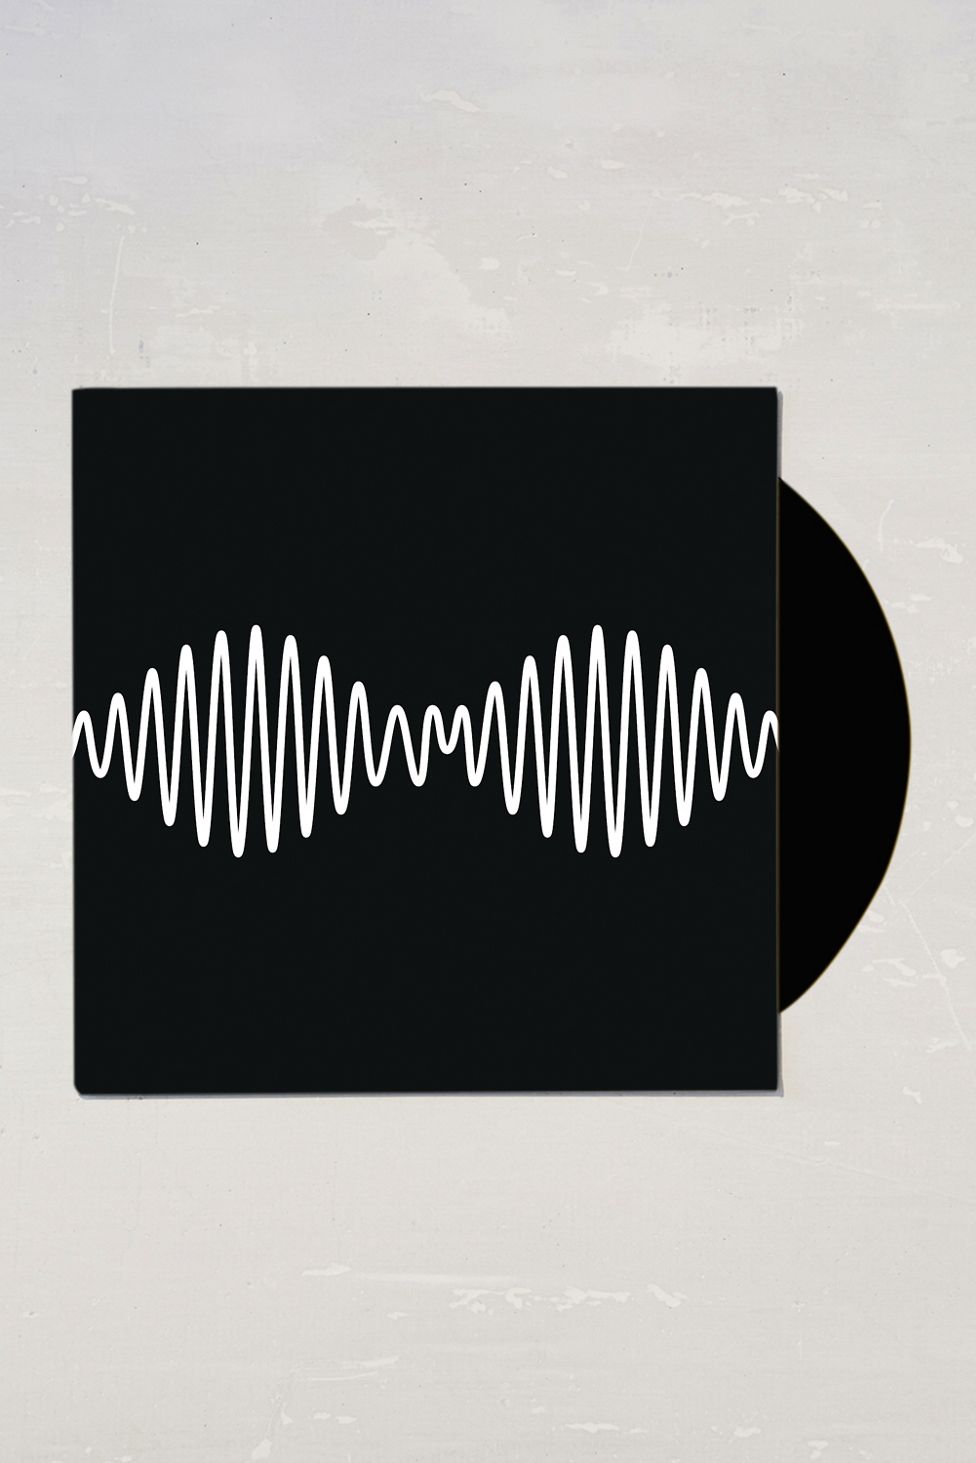 I wanna be you re. Arctic Monkeys "am". Arctic Monkeys am обложка. Arctic Monkeys - am (2013). Arctic Monkeys "am (LP)".